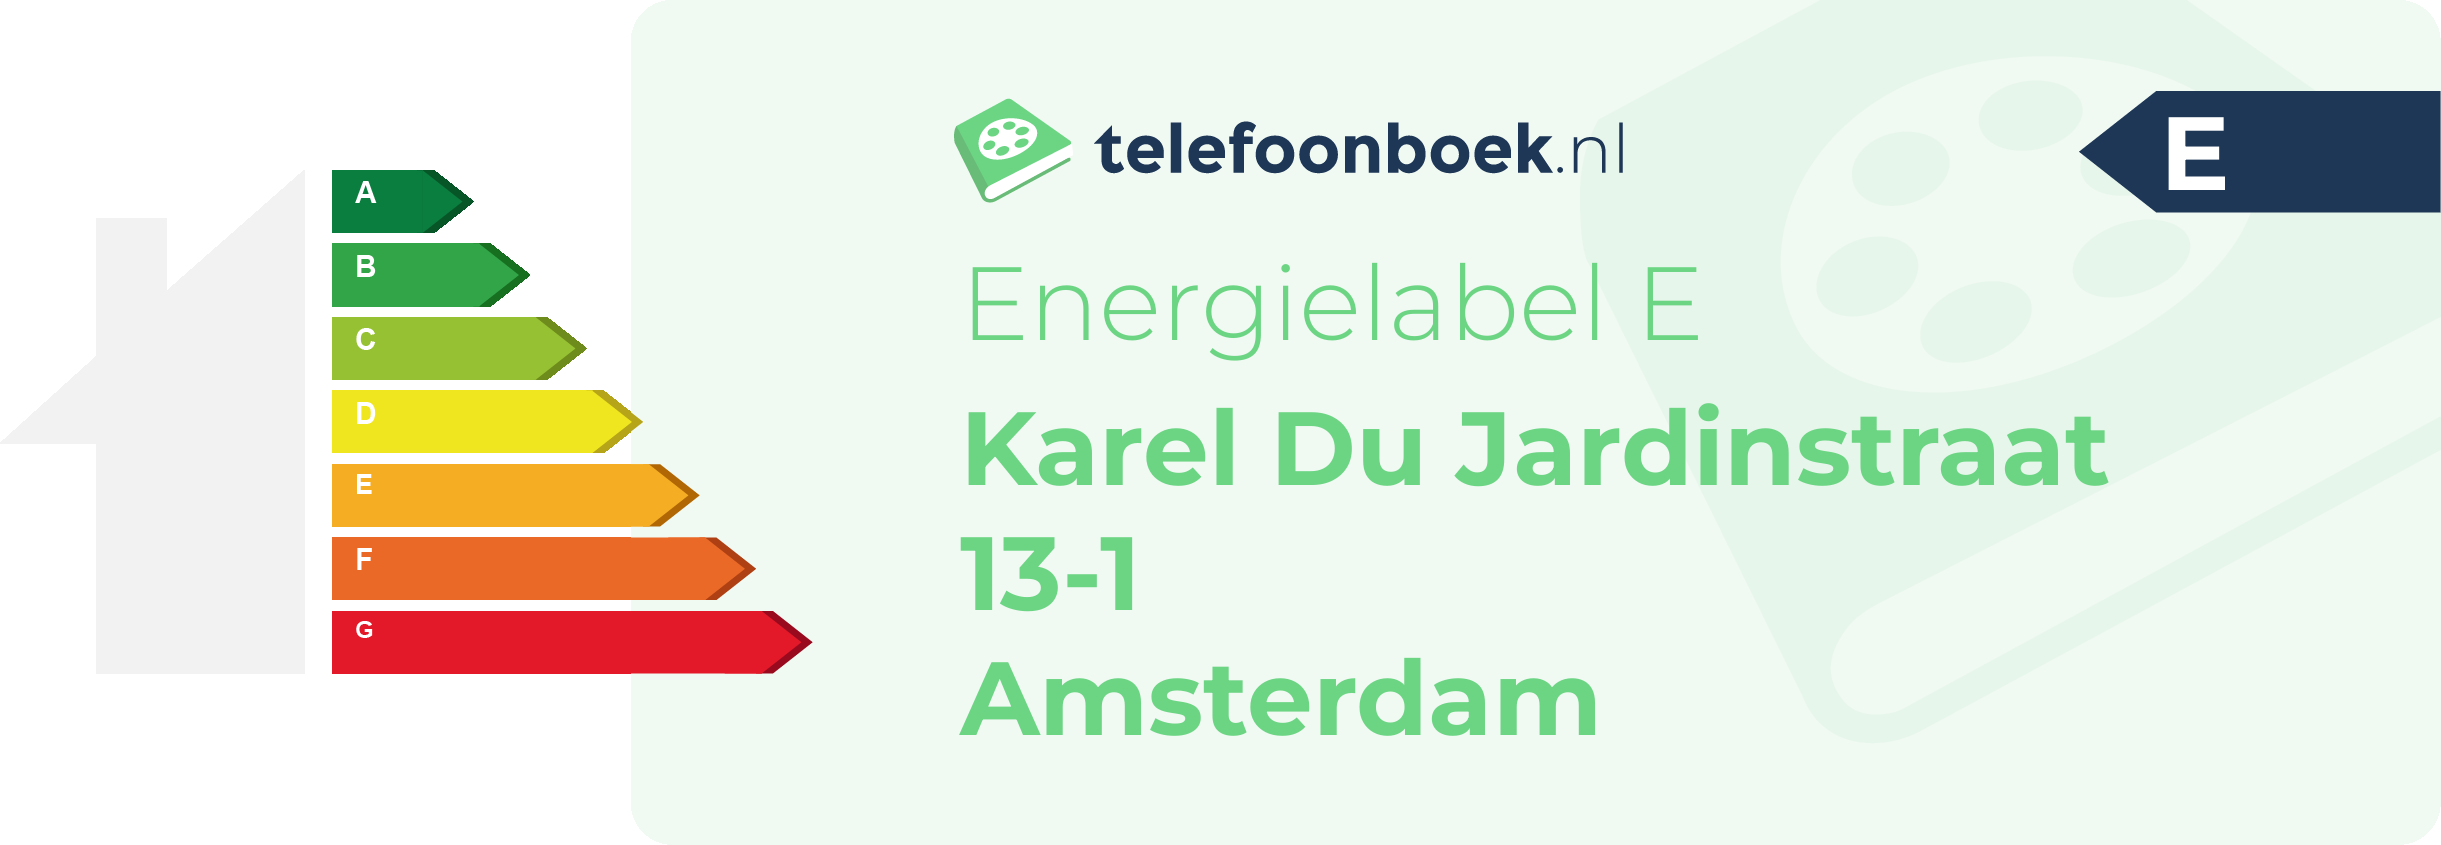 Energielabel Karel Du Jardinstraat 13-1 Amsterdam